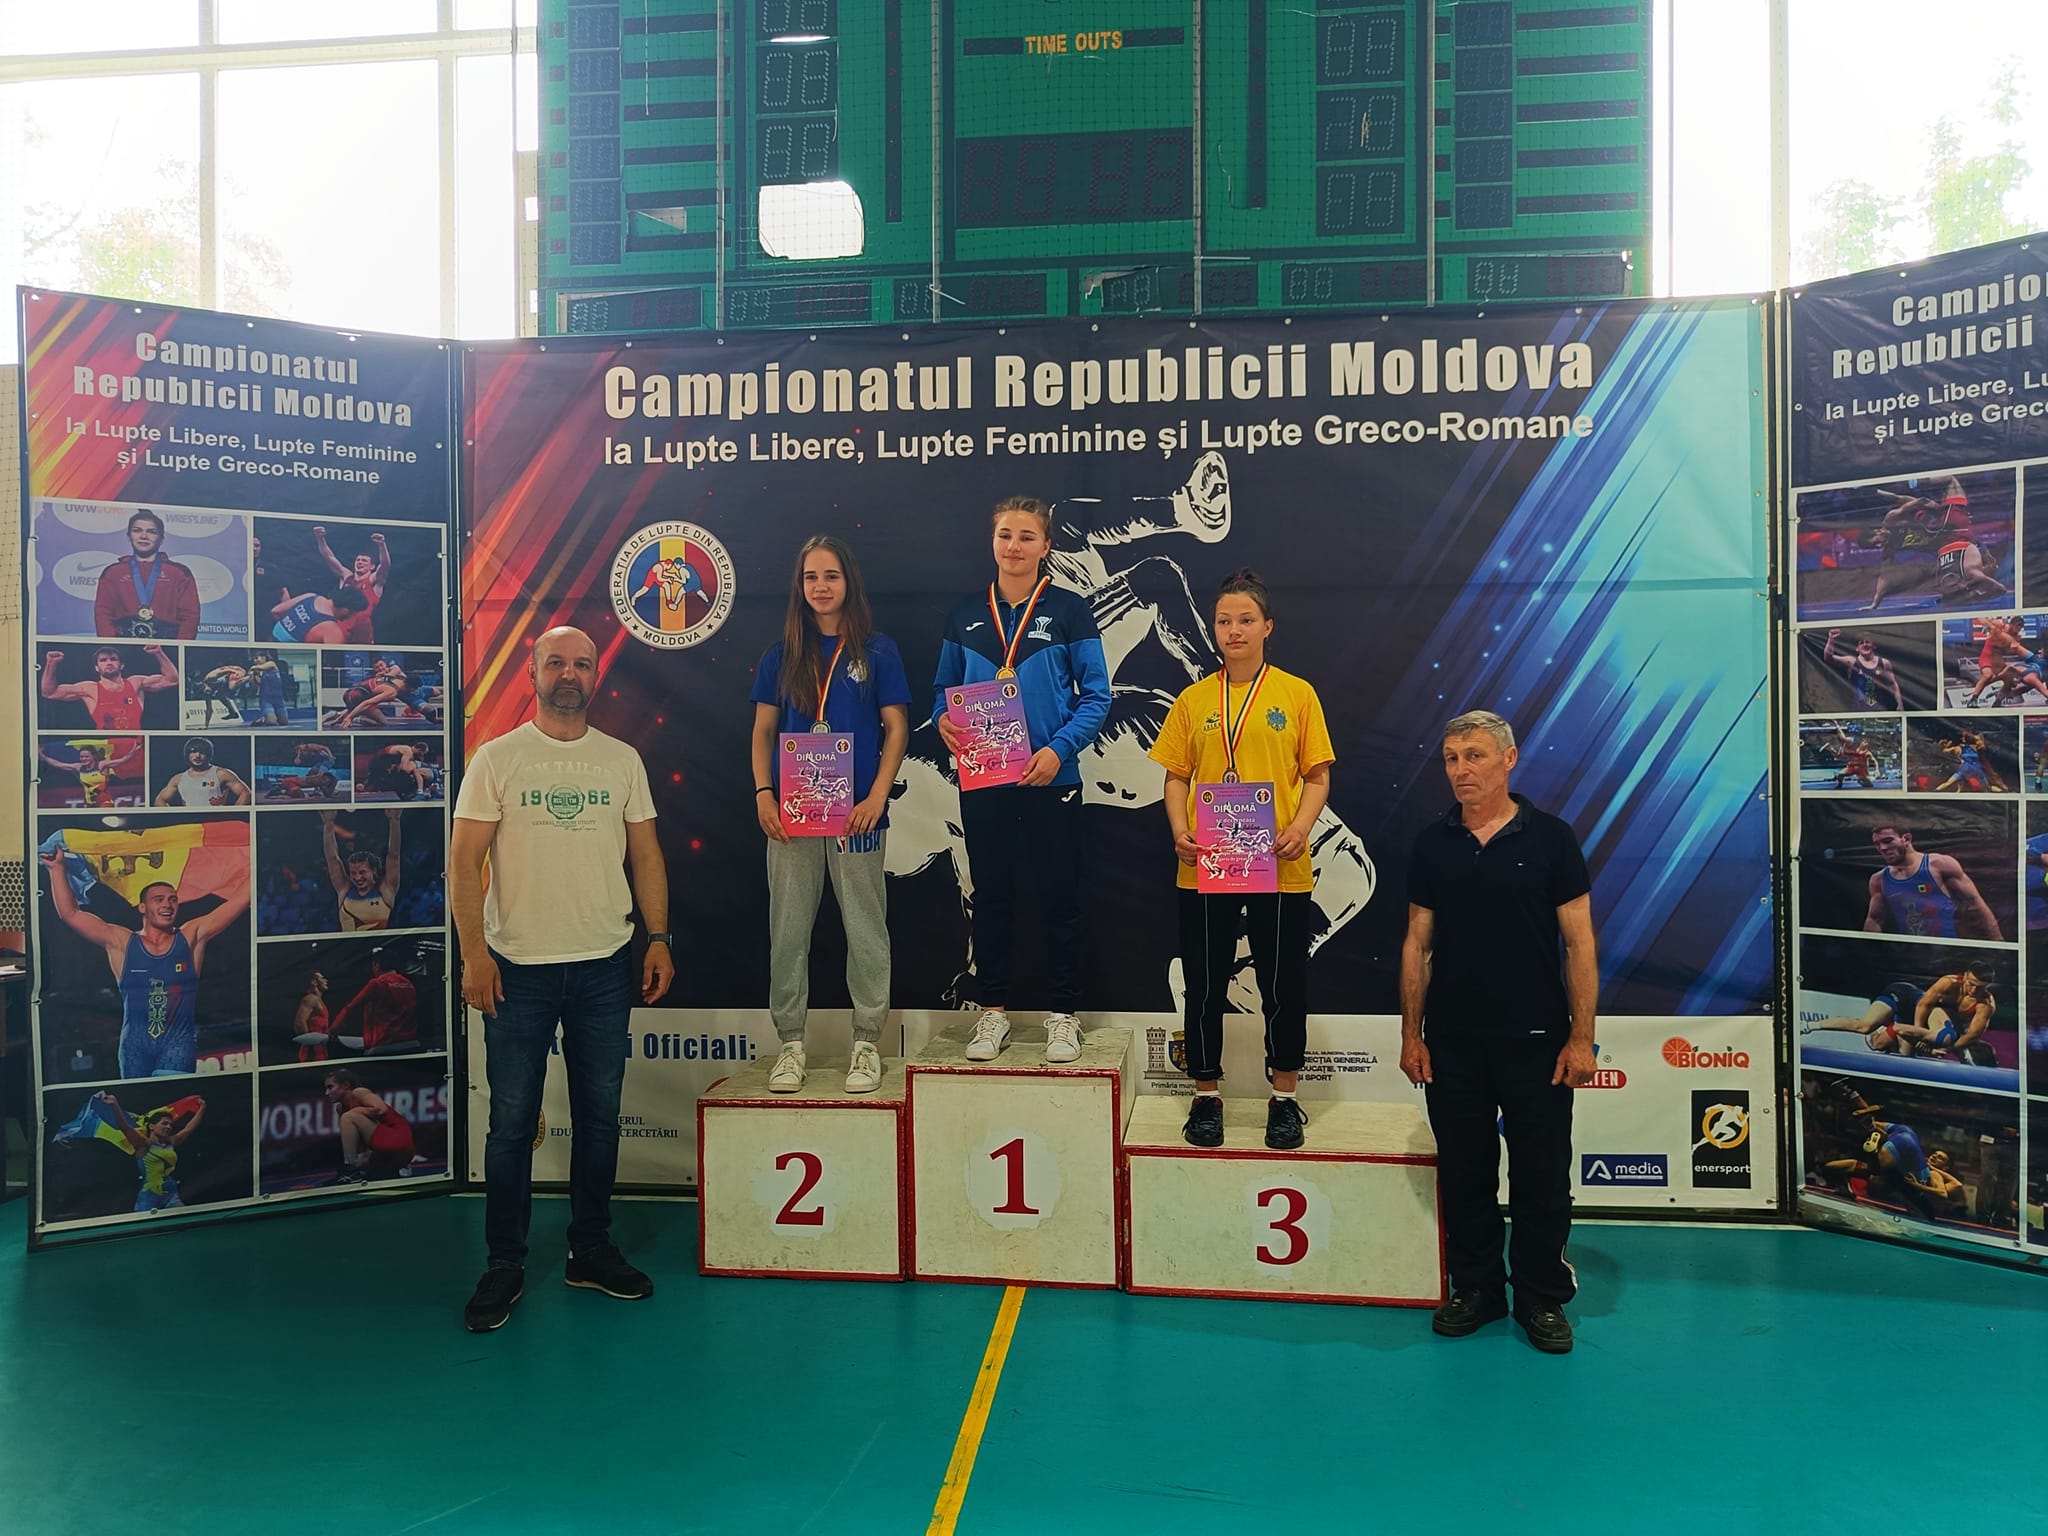 (ФОТО) Спортсмены района Басарабяска заняли 4 призовых места на чемпионате Молдовы по вольной борьбе